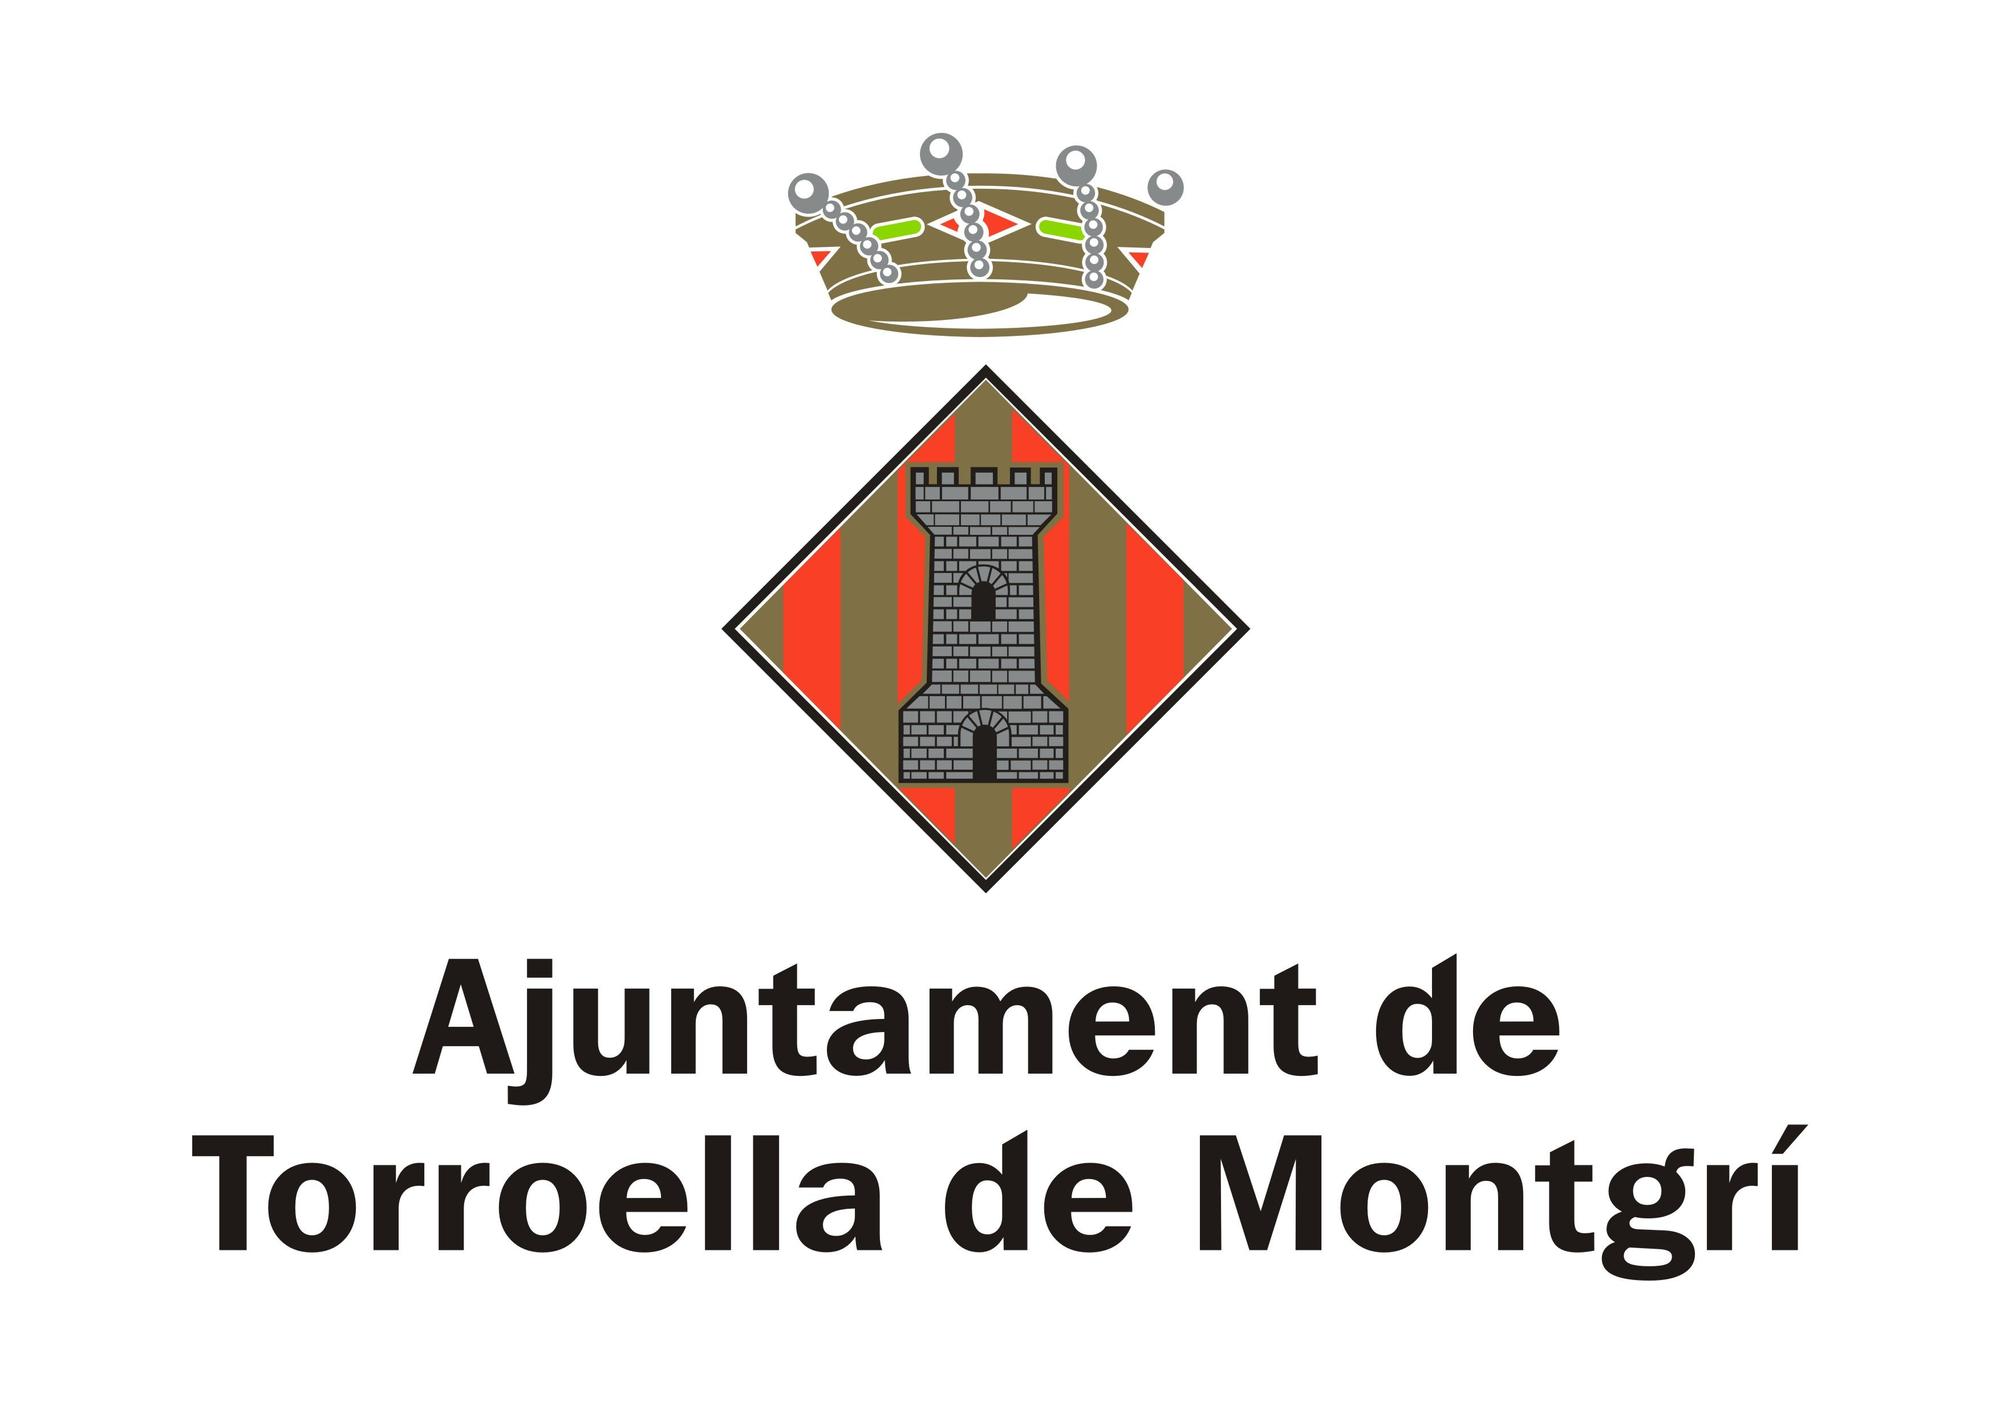 Ajuntament de Torroella de Montgrí